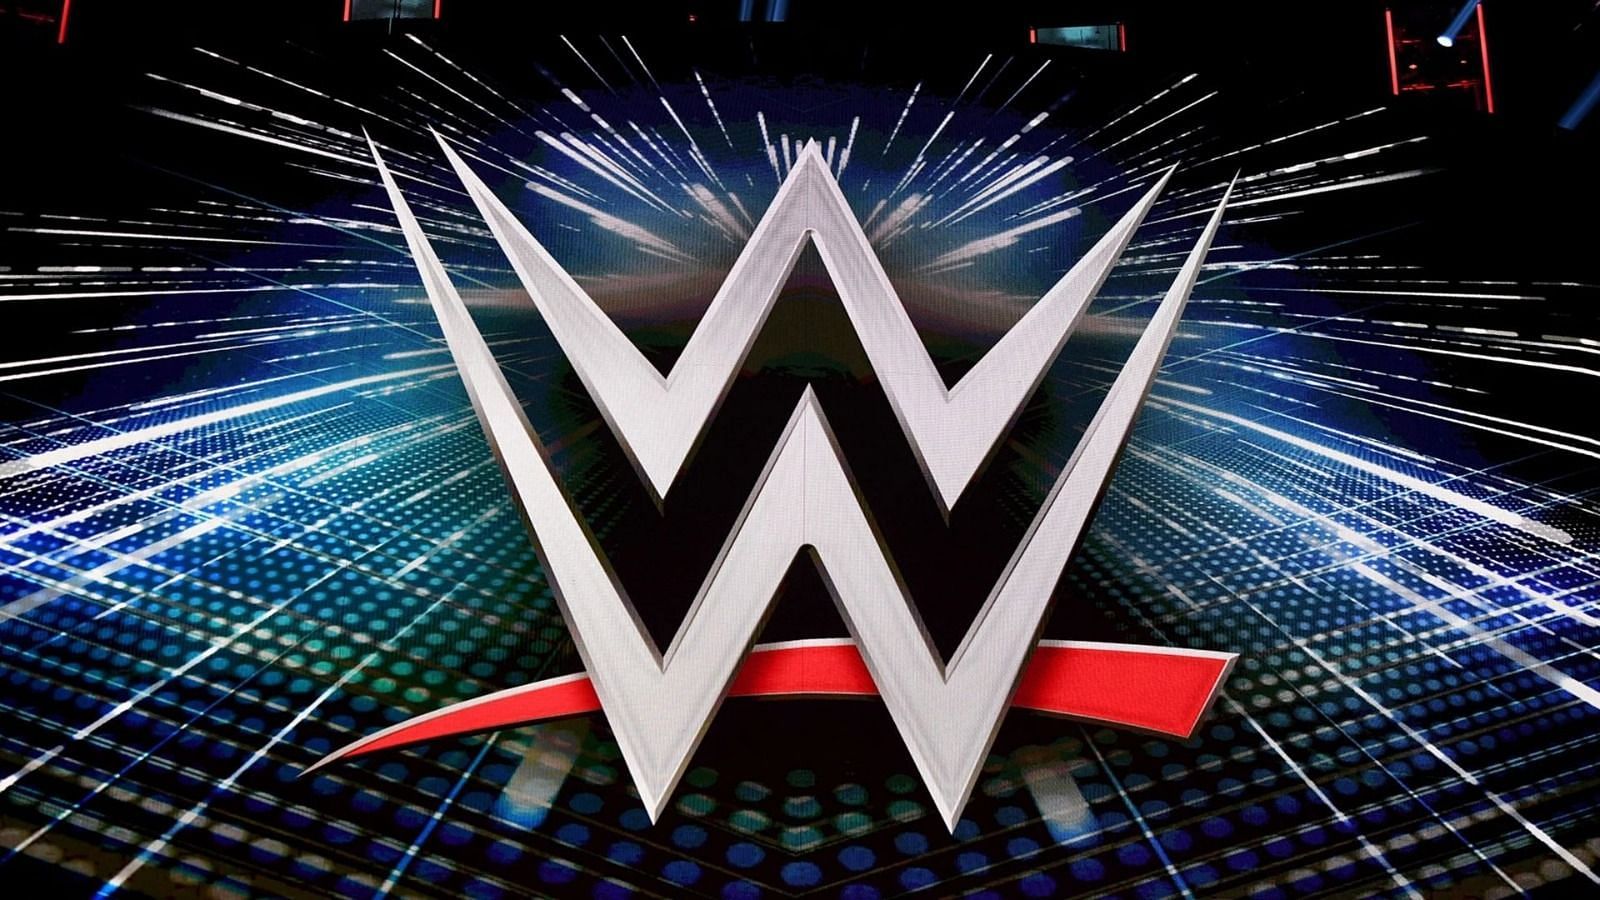 शार्लेट फ्लेयर इस समय WWE की सबसे बड़ी स्टार्स में से एक हैं